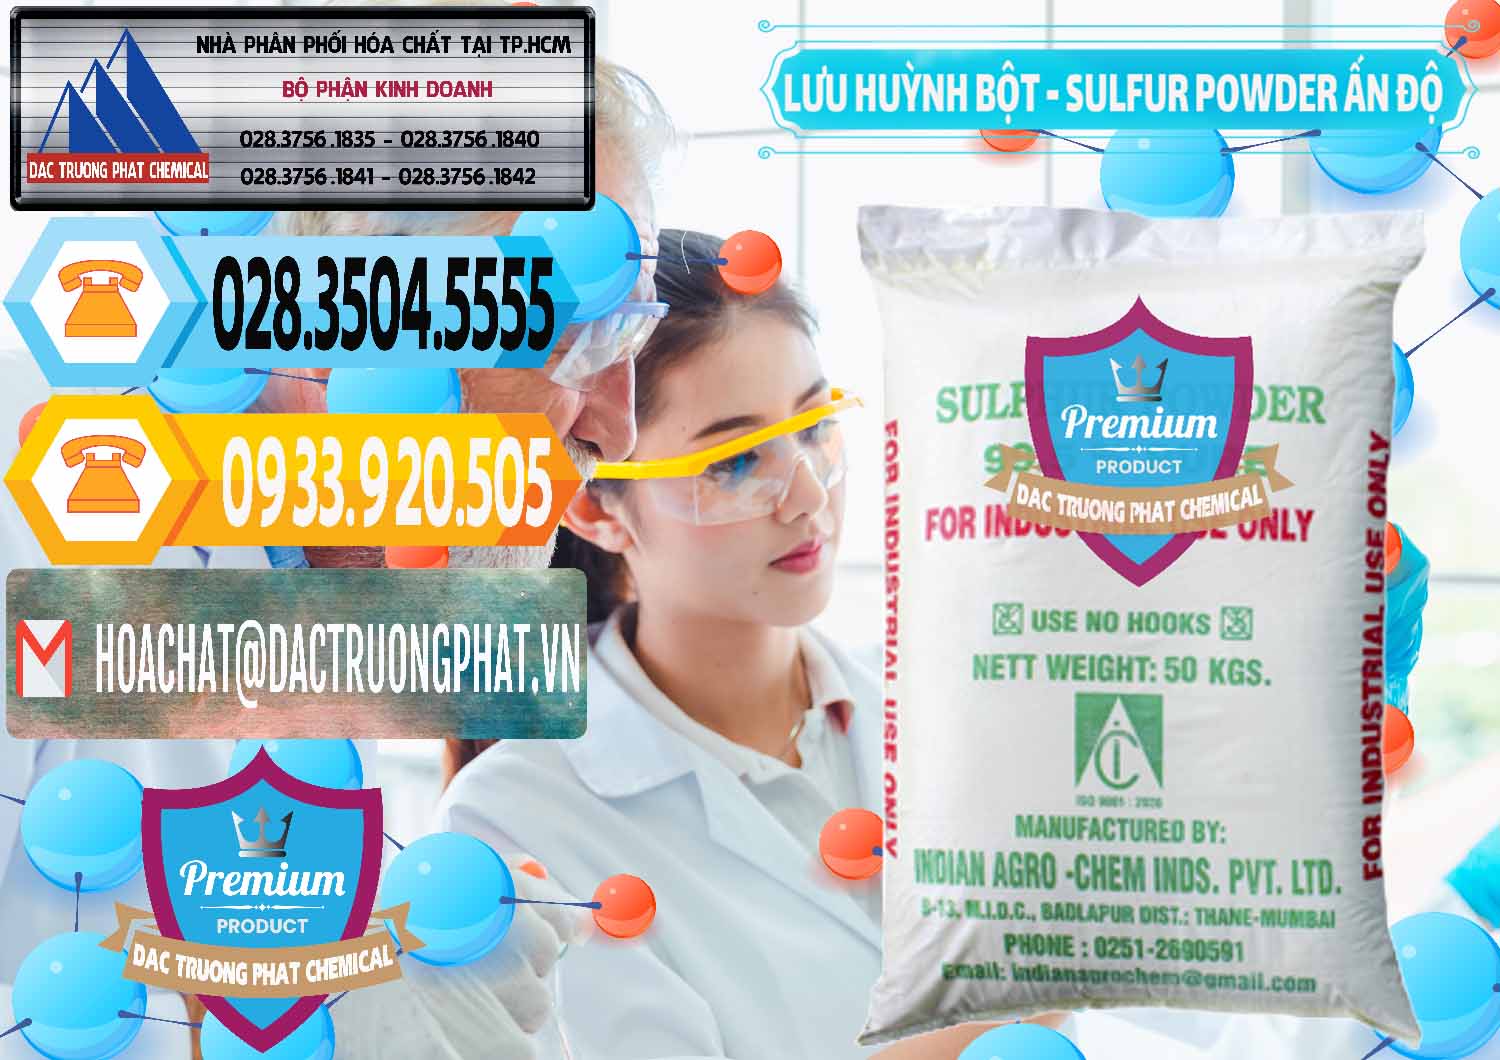 Chuyên cung ứng và bán Lưu huỳnh Bột - Sulfur Powder Ấn Độ India - 0347 - Chuyên nhập khẩu - phân phối hóa chất tại TP.HCM - hoachattayrua.net